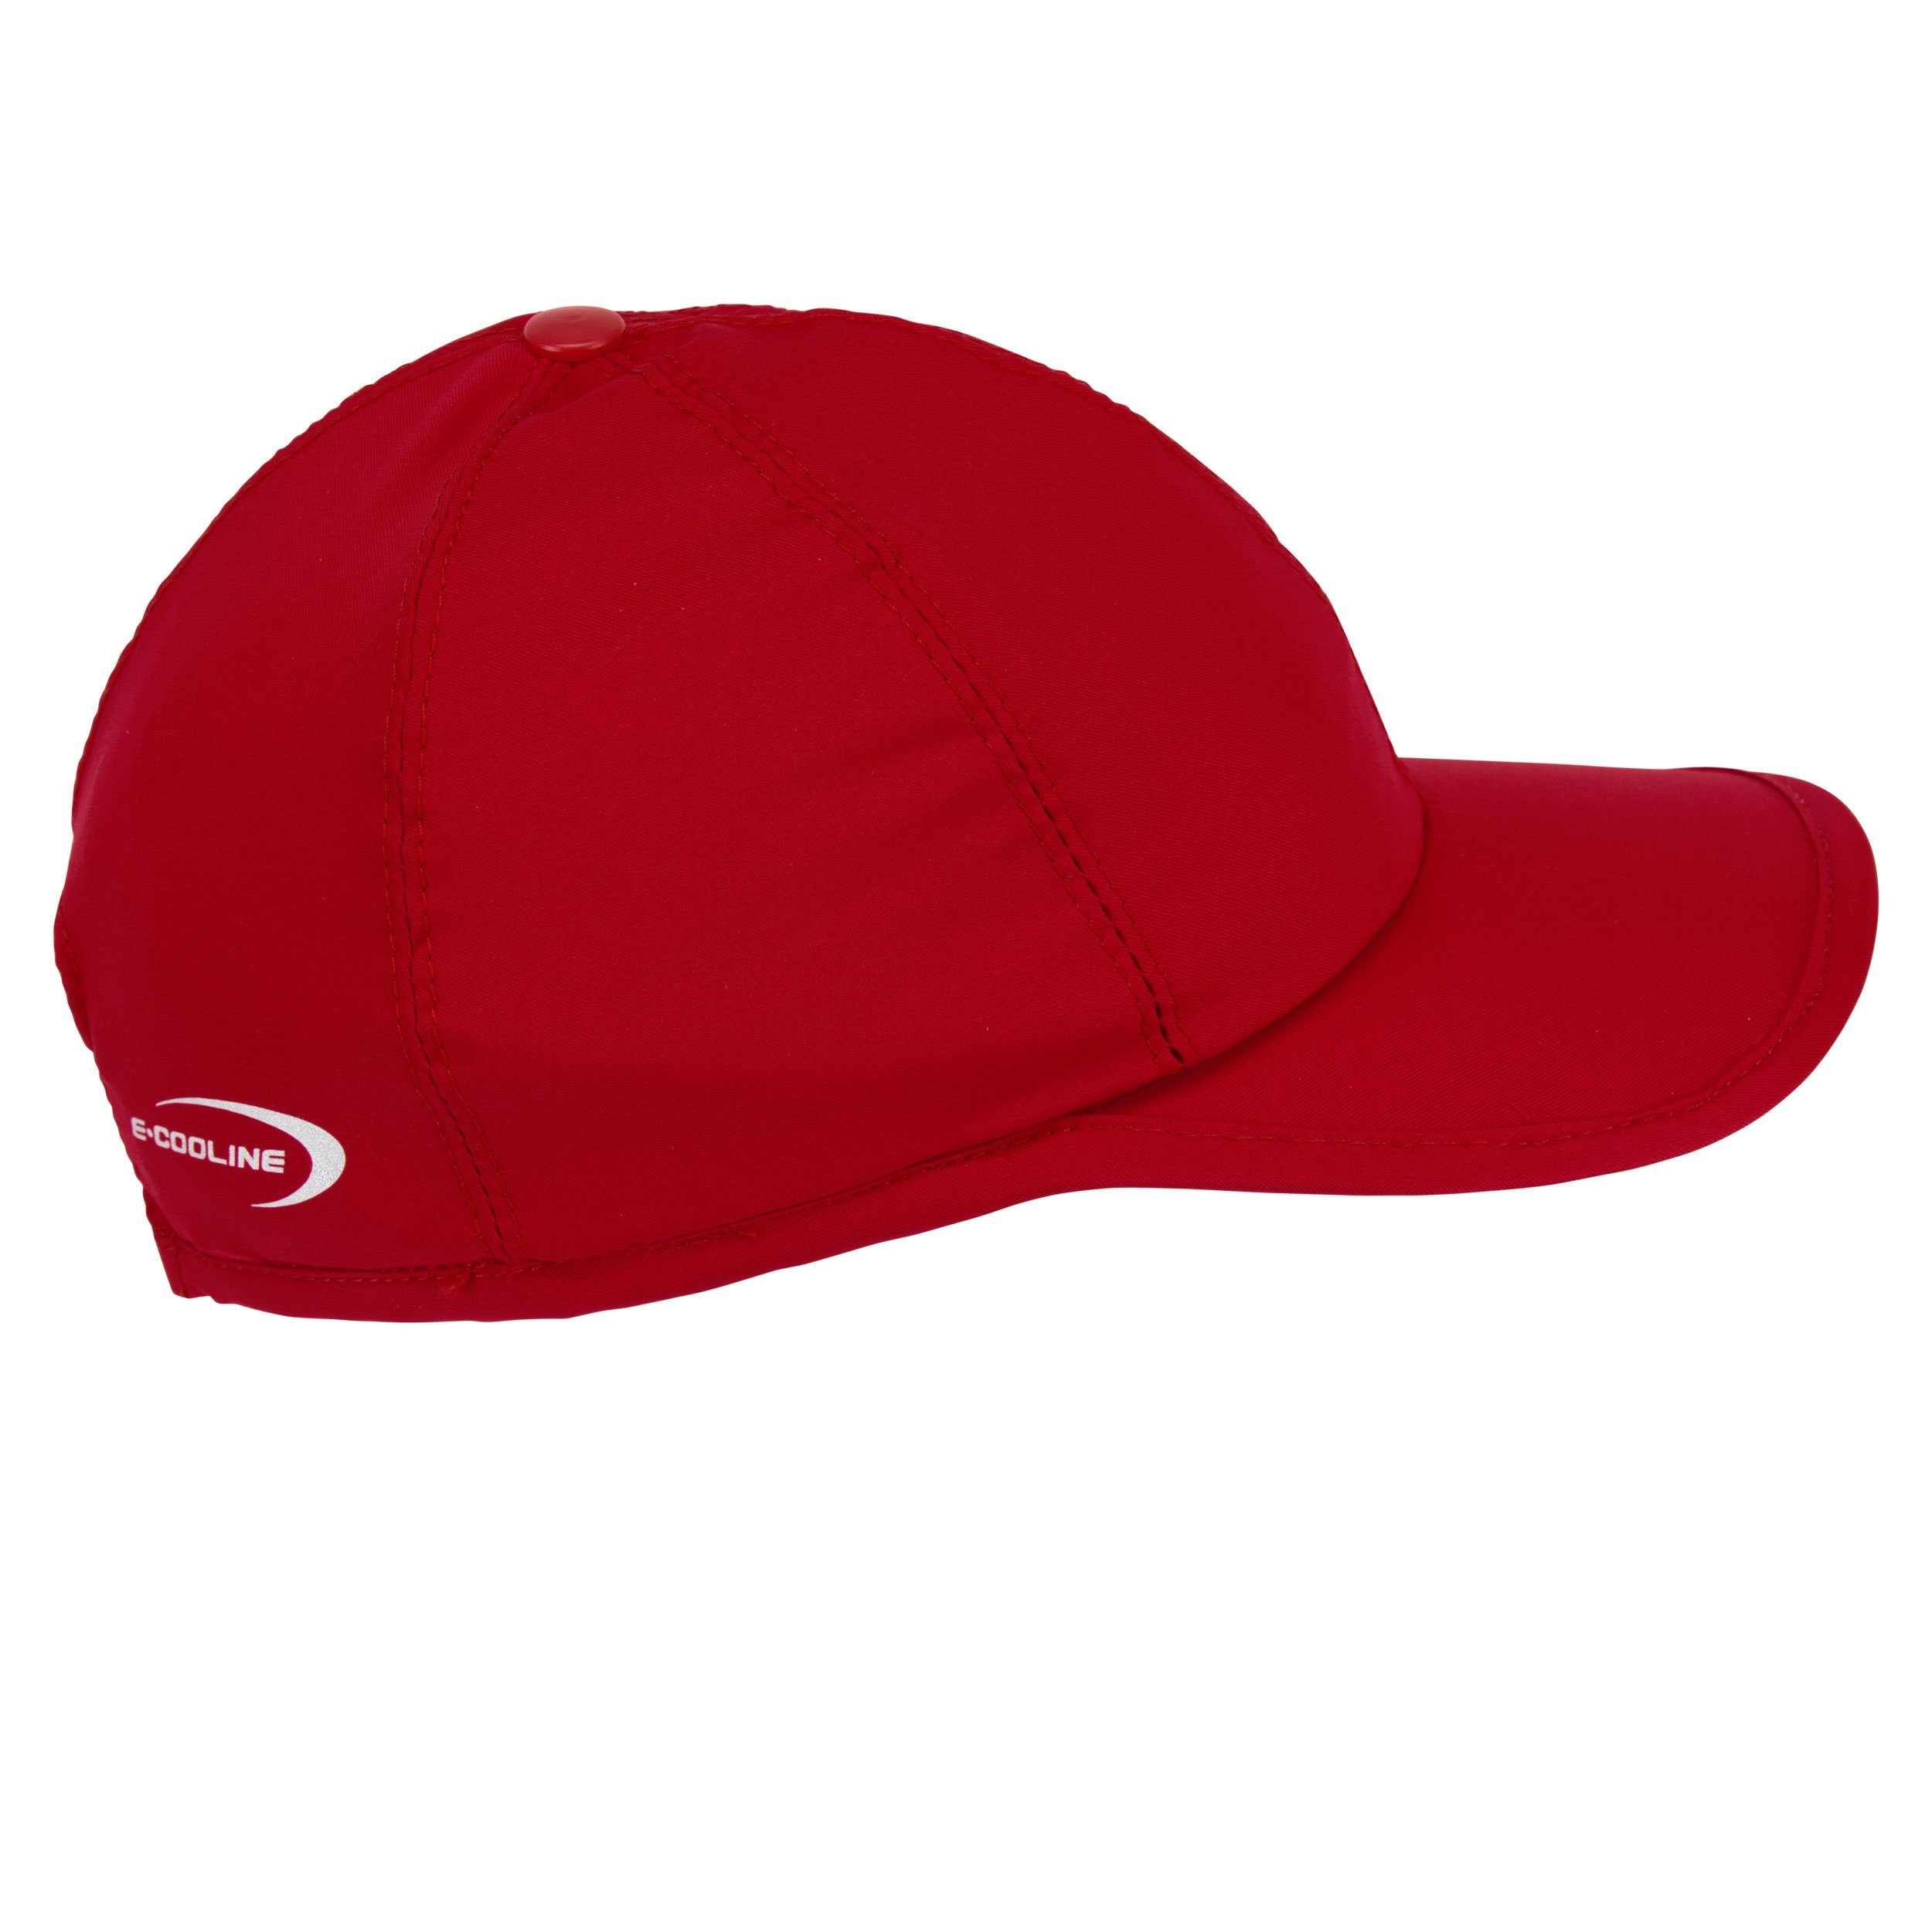 aktiv durch E.COOLINE kühlende mit Baseball Wasser - Mütze Cap Klimaanlage Aktivierung Rot - Anziehen Kühlung zum